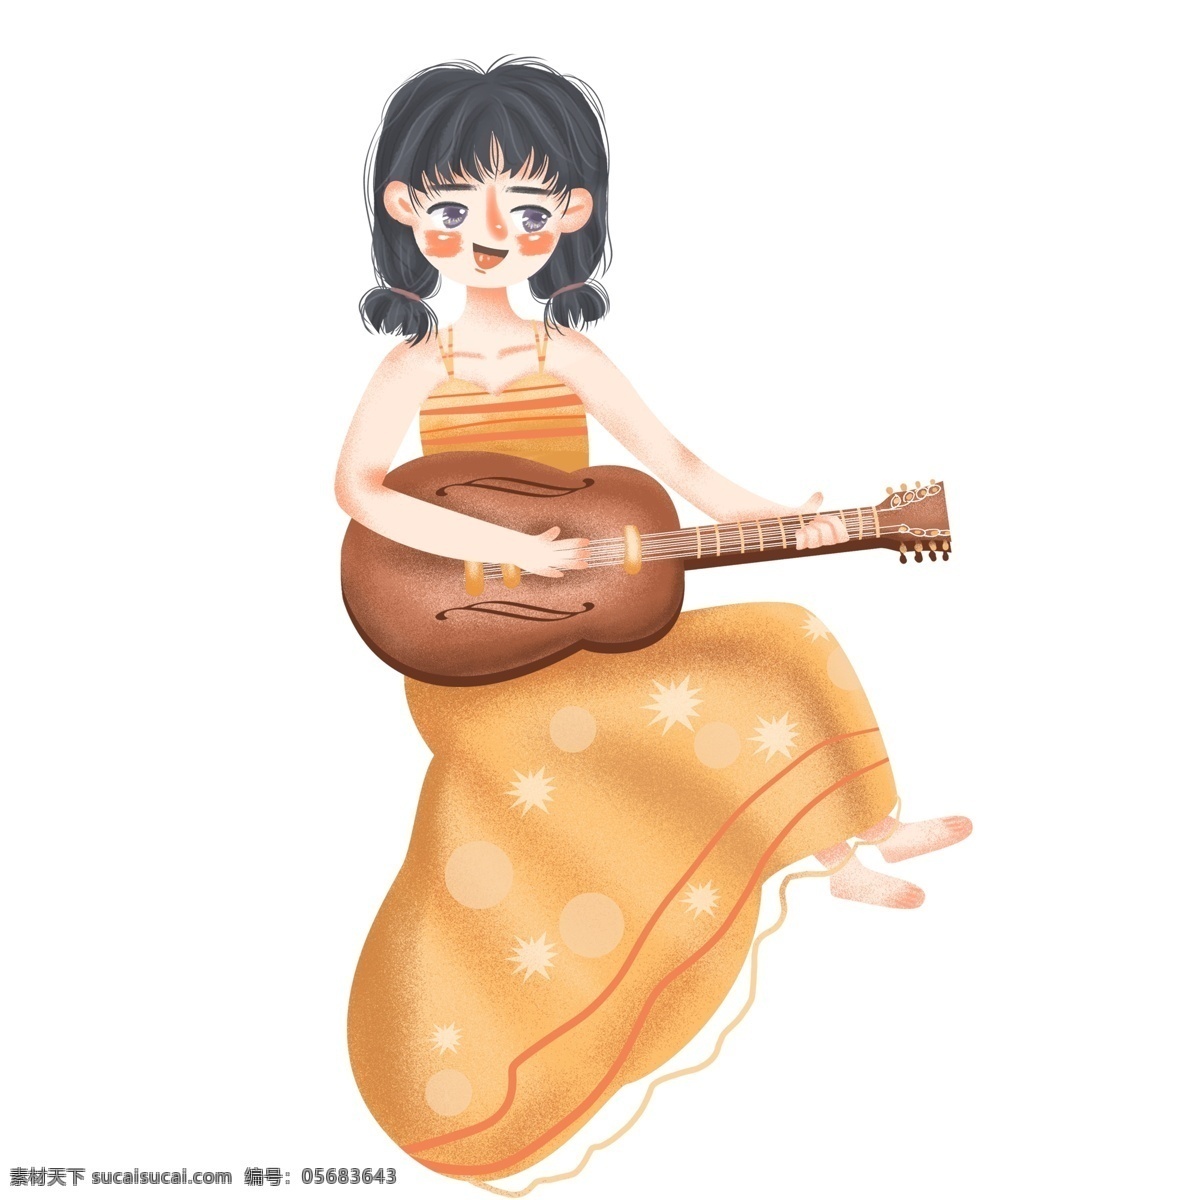 弹琴 的卡 通 女孩 图案 元素 人物 卡通人物 吉他 乐器 设计元素 创意元素 手绘元素 psd元素 免抠元素